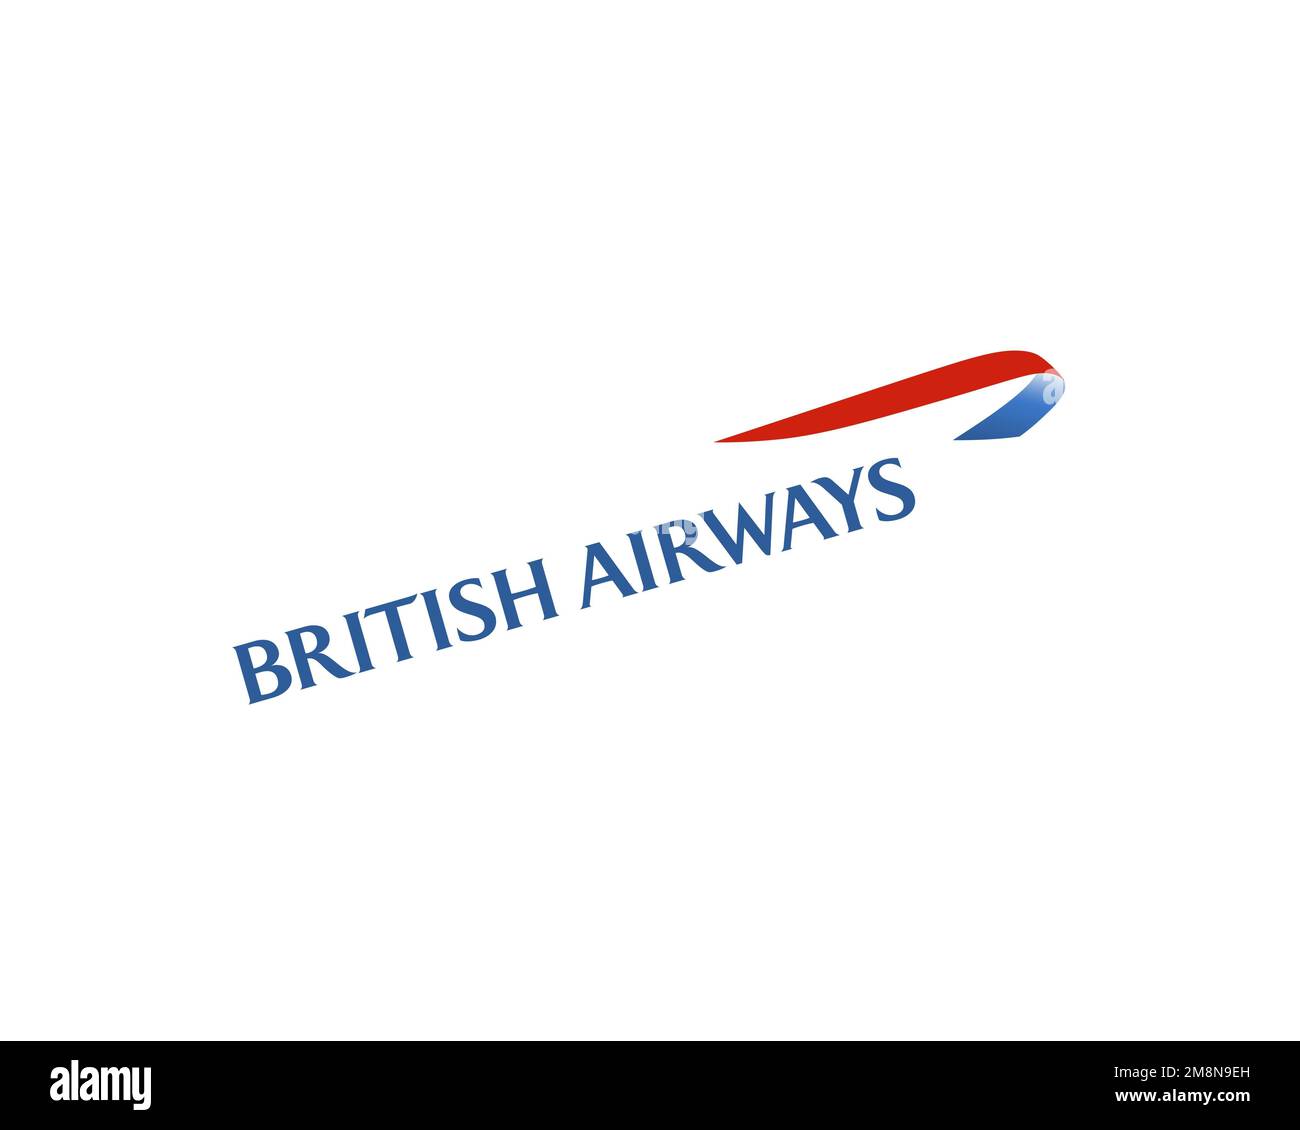 British Airways, rotated logo, white background Stock Photo - Alamy